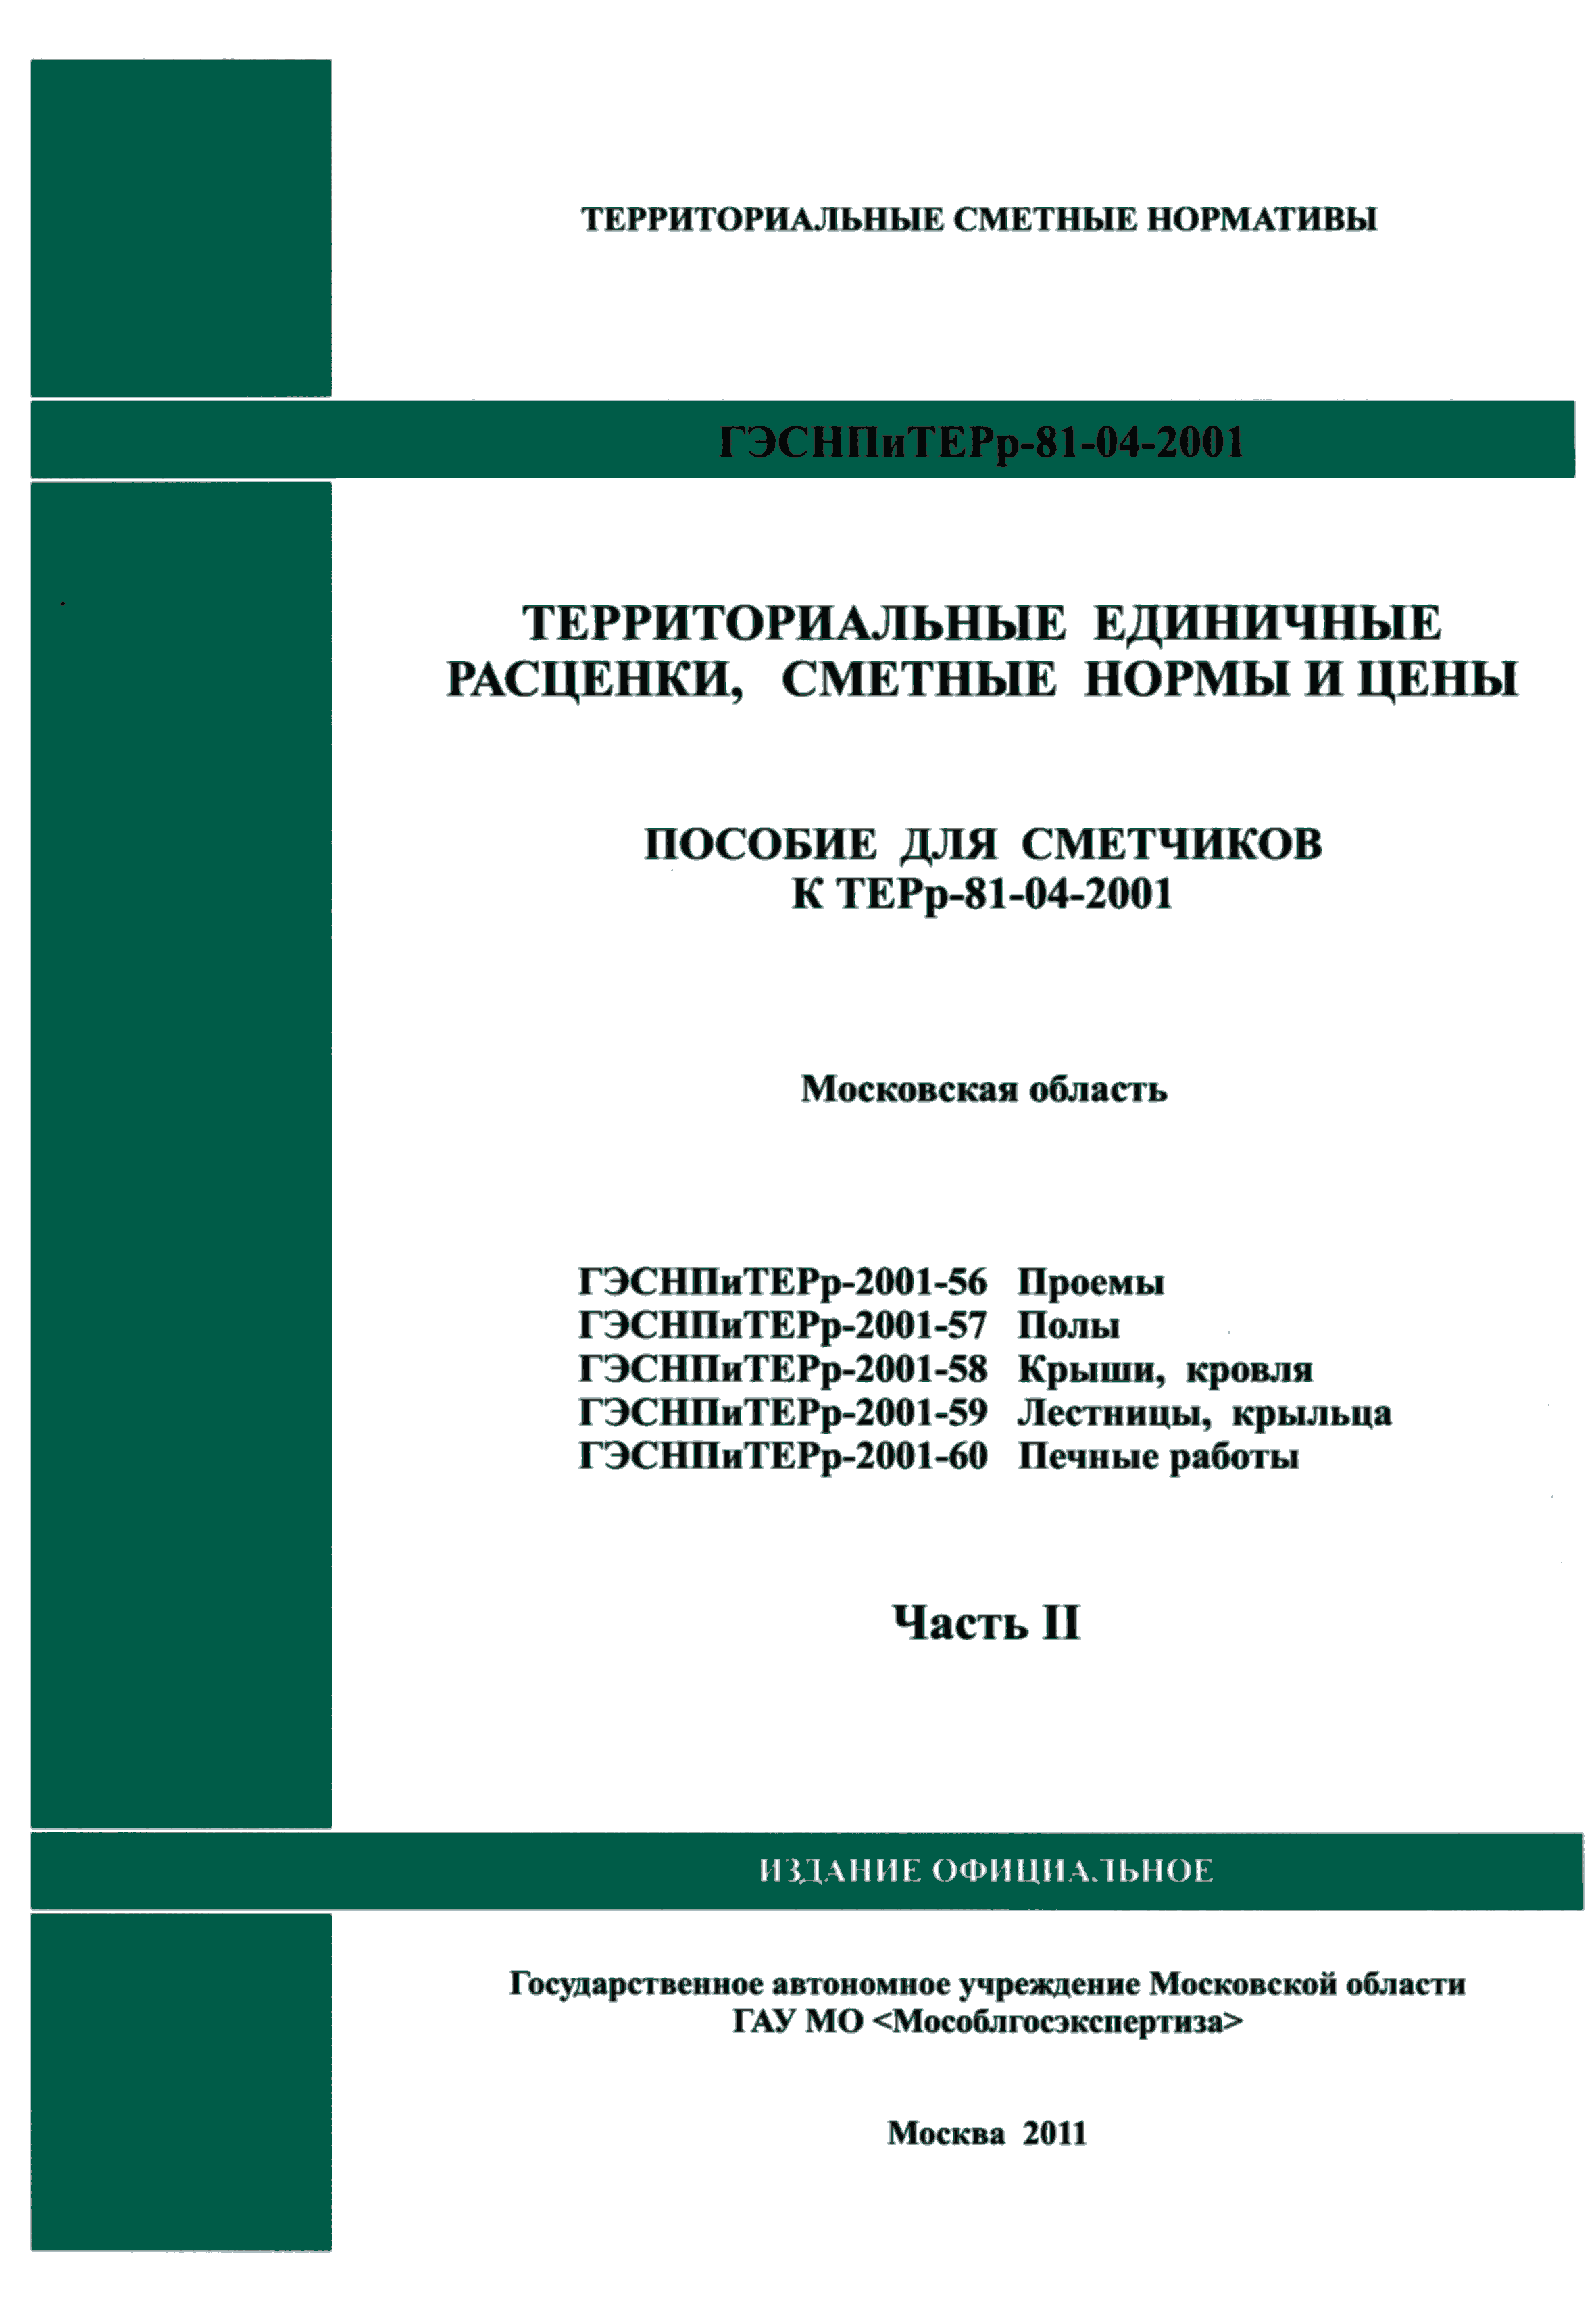 ГЭСНПиТЕРр 2001-60 Московской области